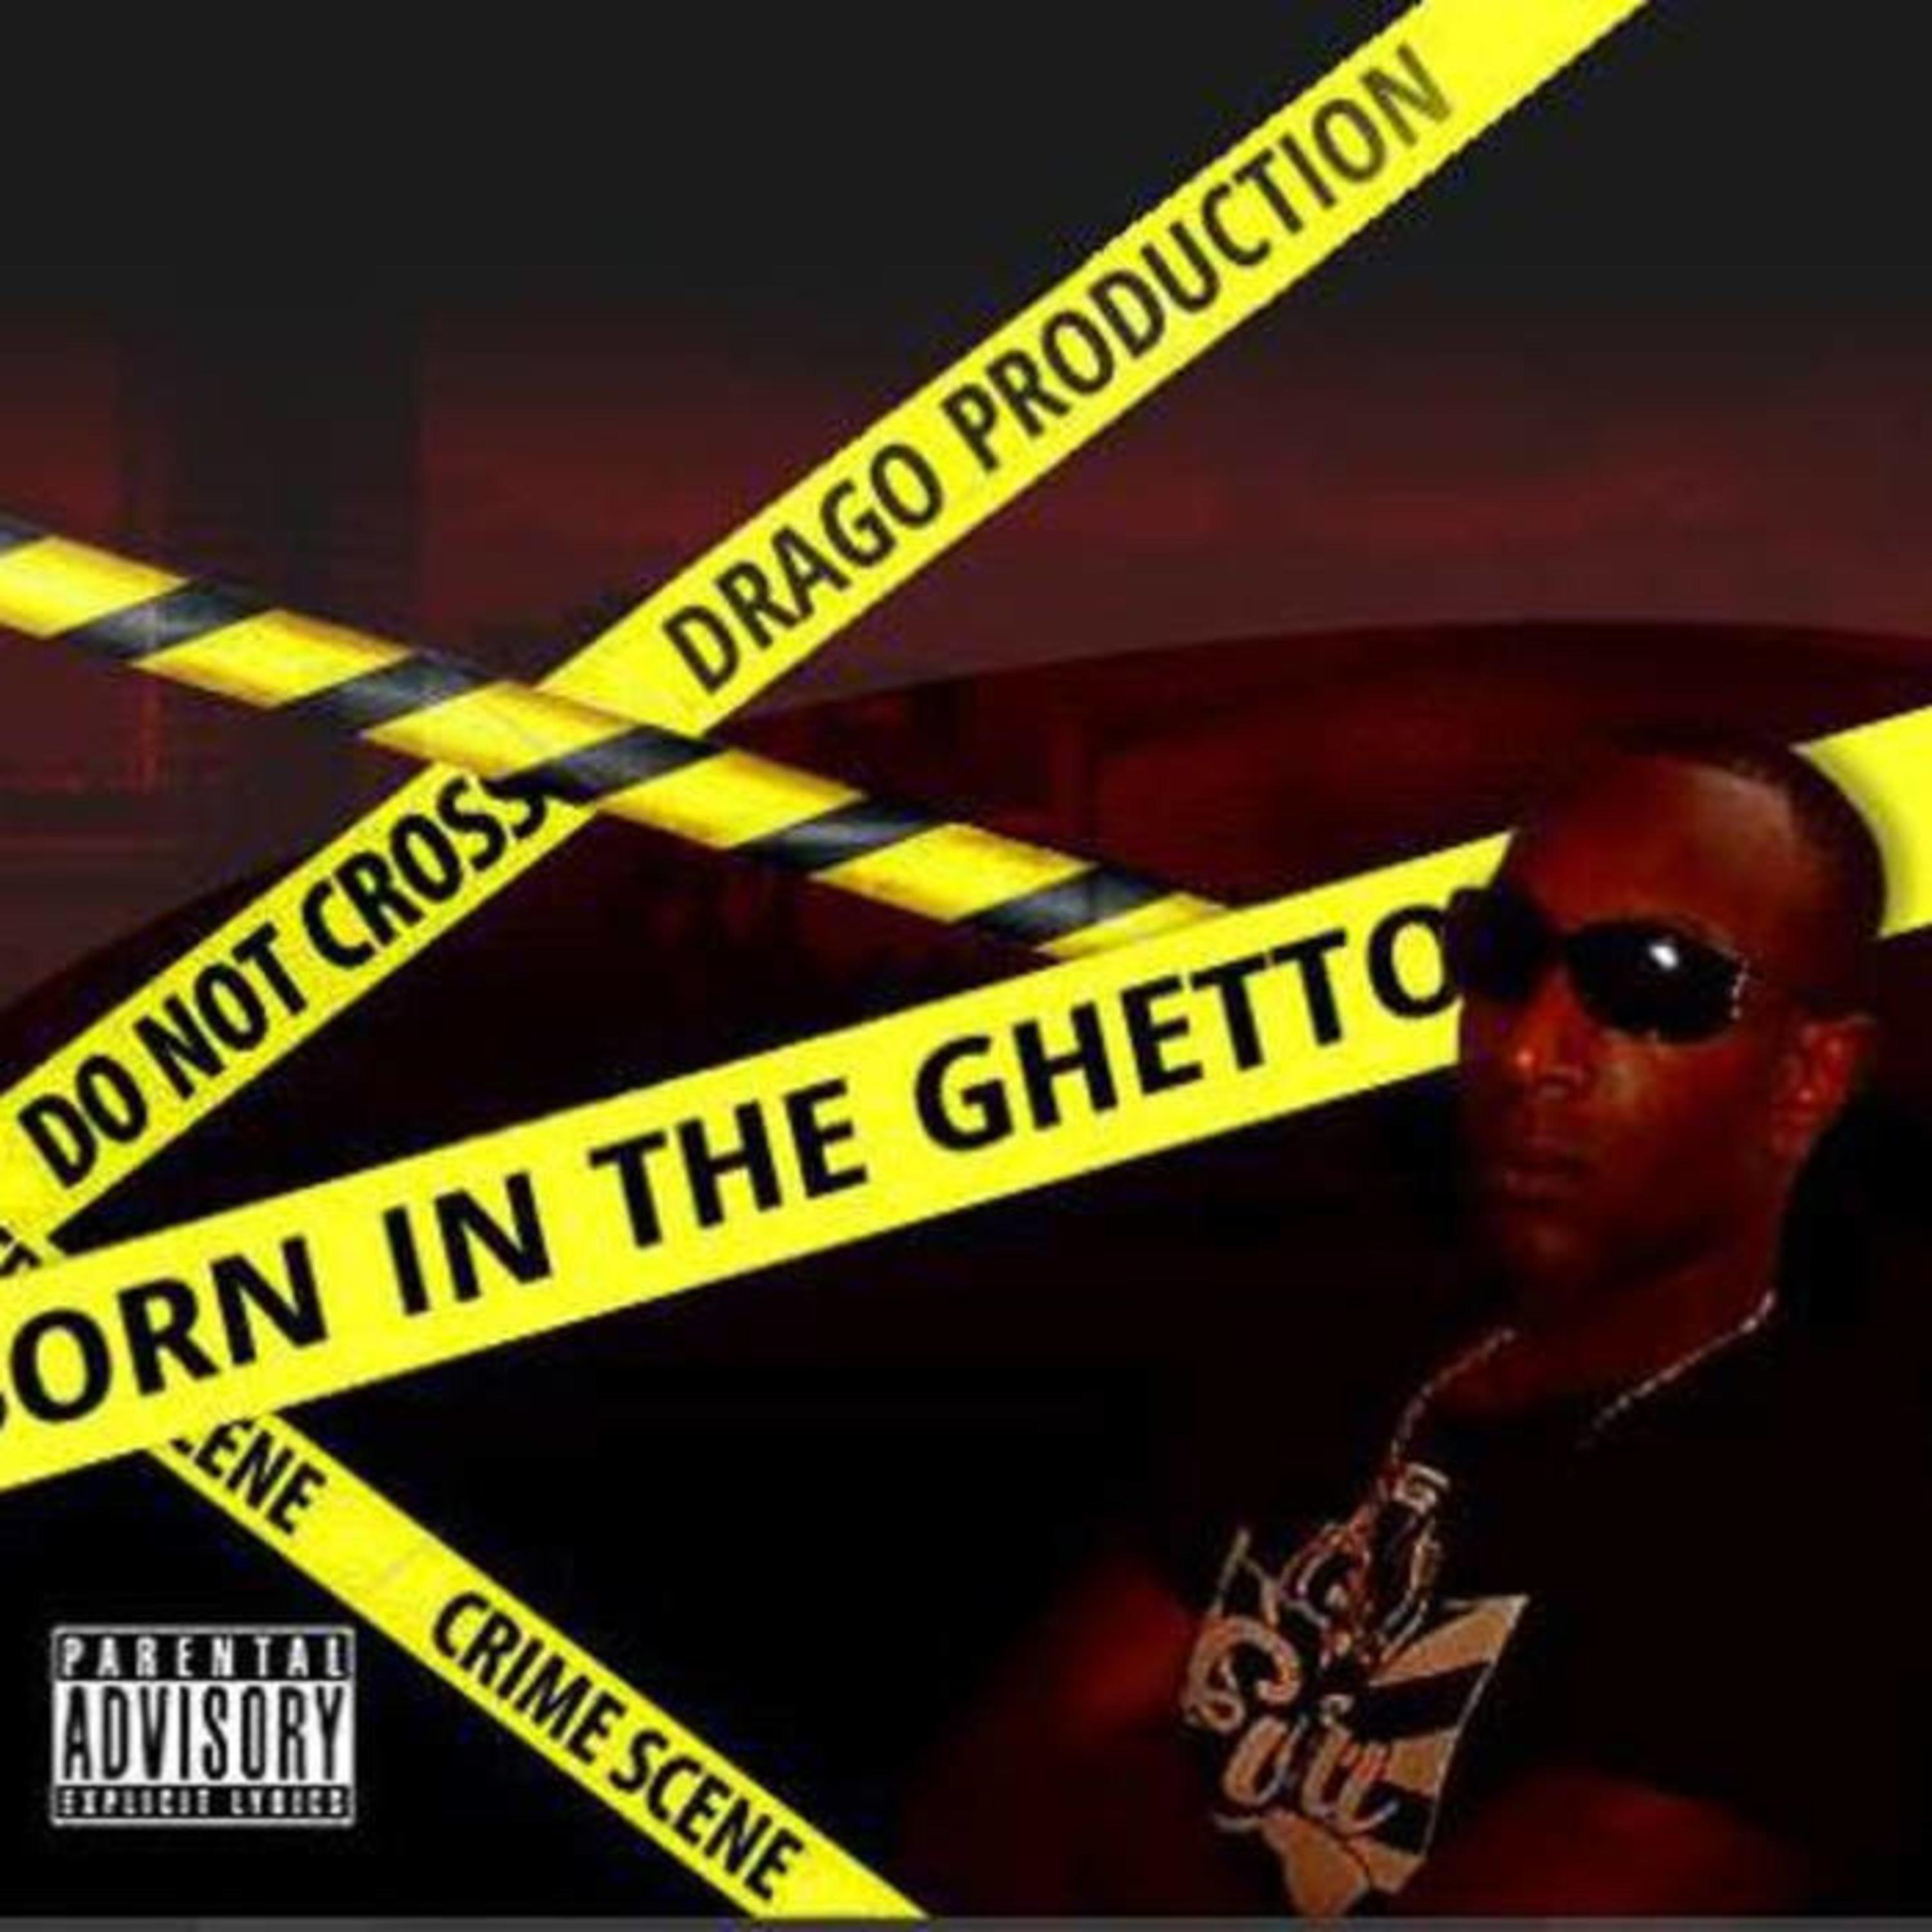 Raised in the Ghetto